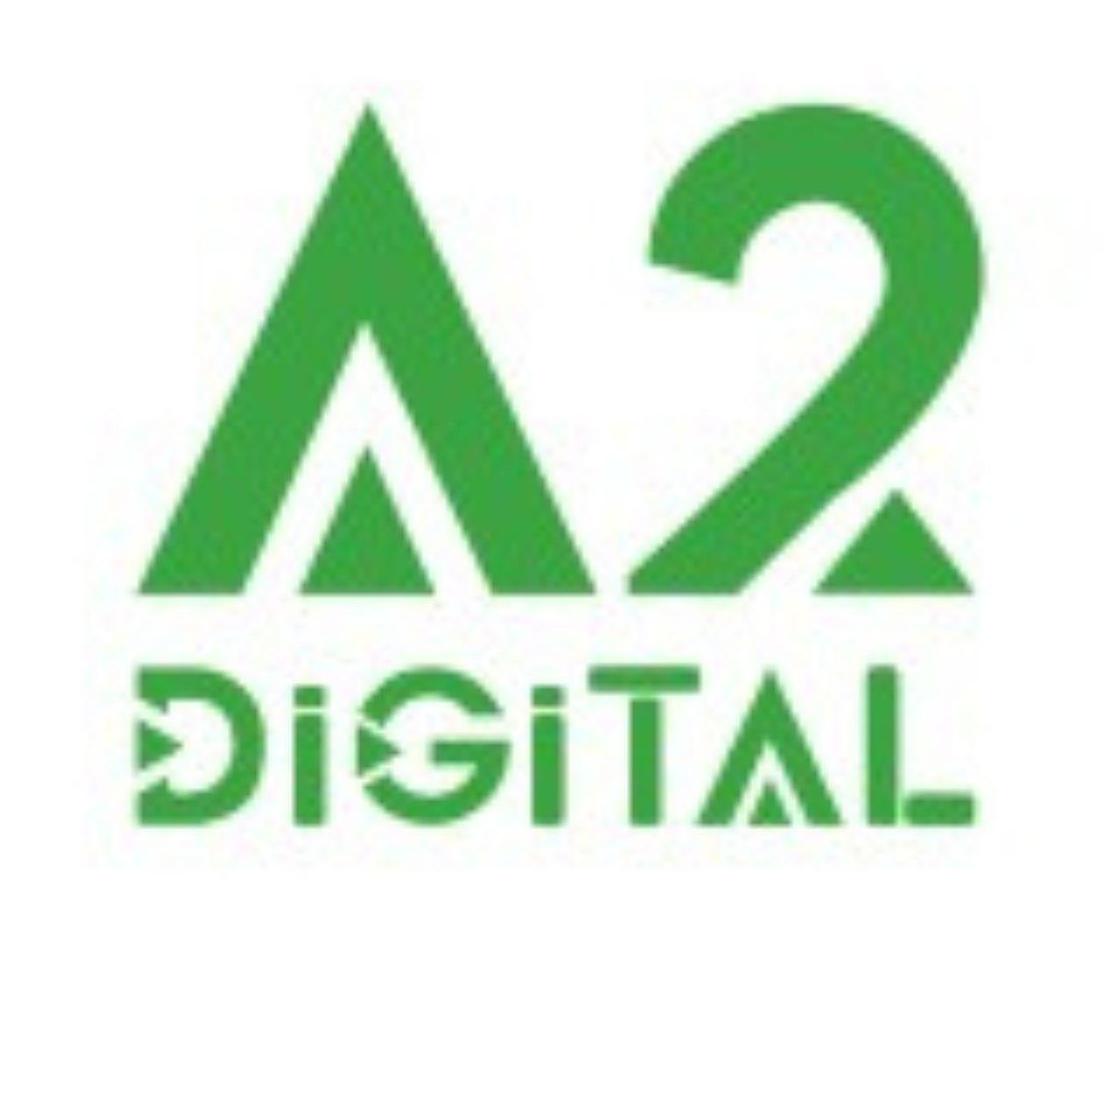 A2D Digital